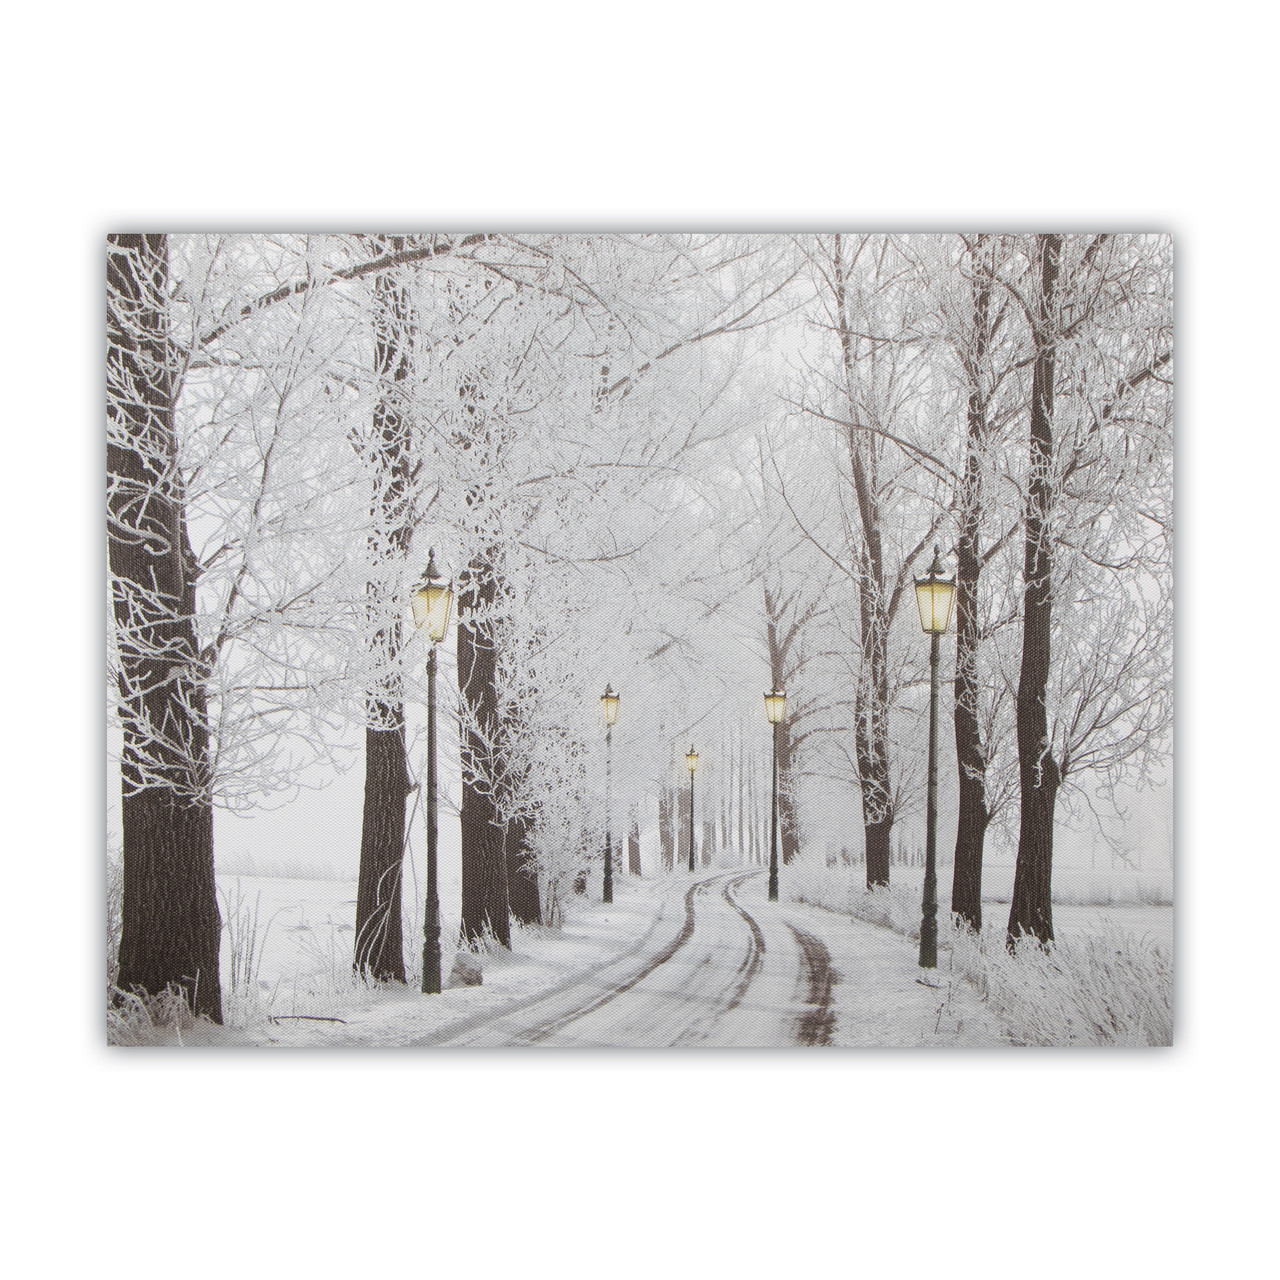 Картина з світловими ефектами зимовий ліс з вуличними ліхтарями і засніженою стежкою, 5 LЕD ламп, 30х40 см (940157)